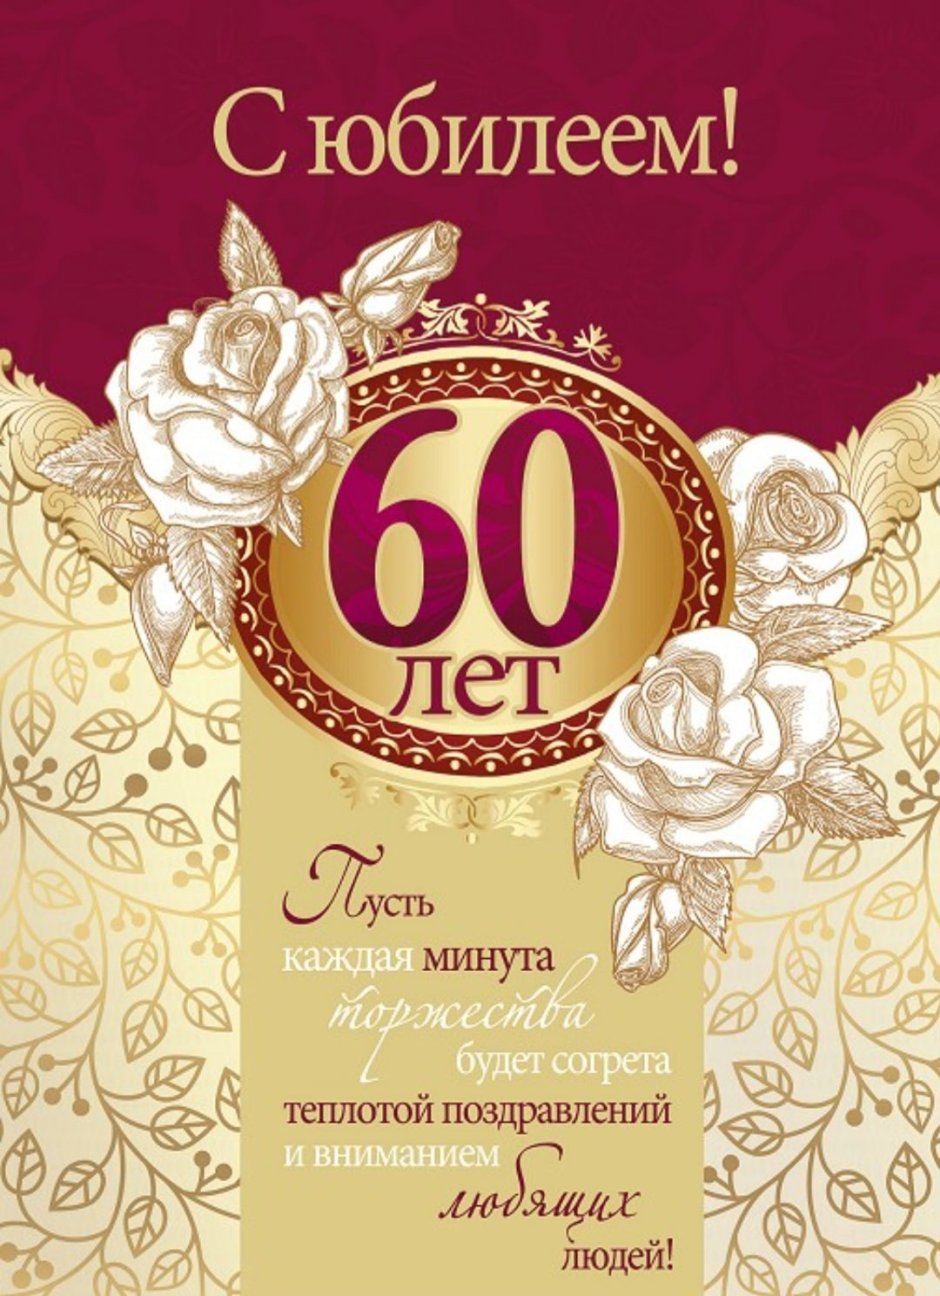 Поздравление с юбилеем 60 лет